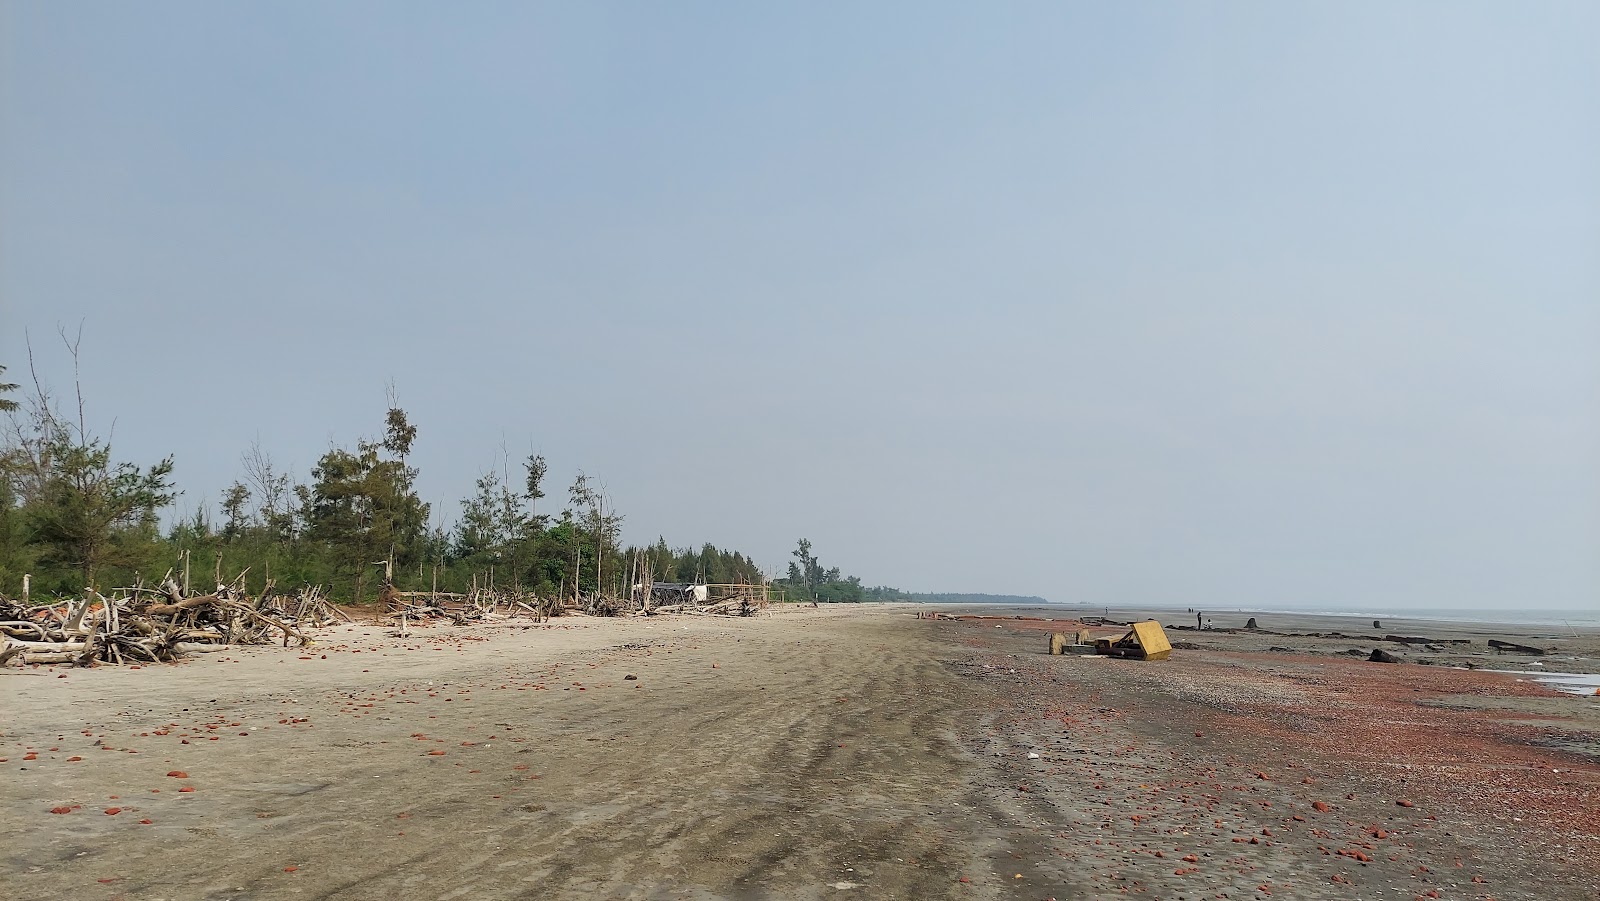 Gobardhanpur Beach'in fotoğrafı parlak kum yüzey ile